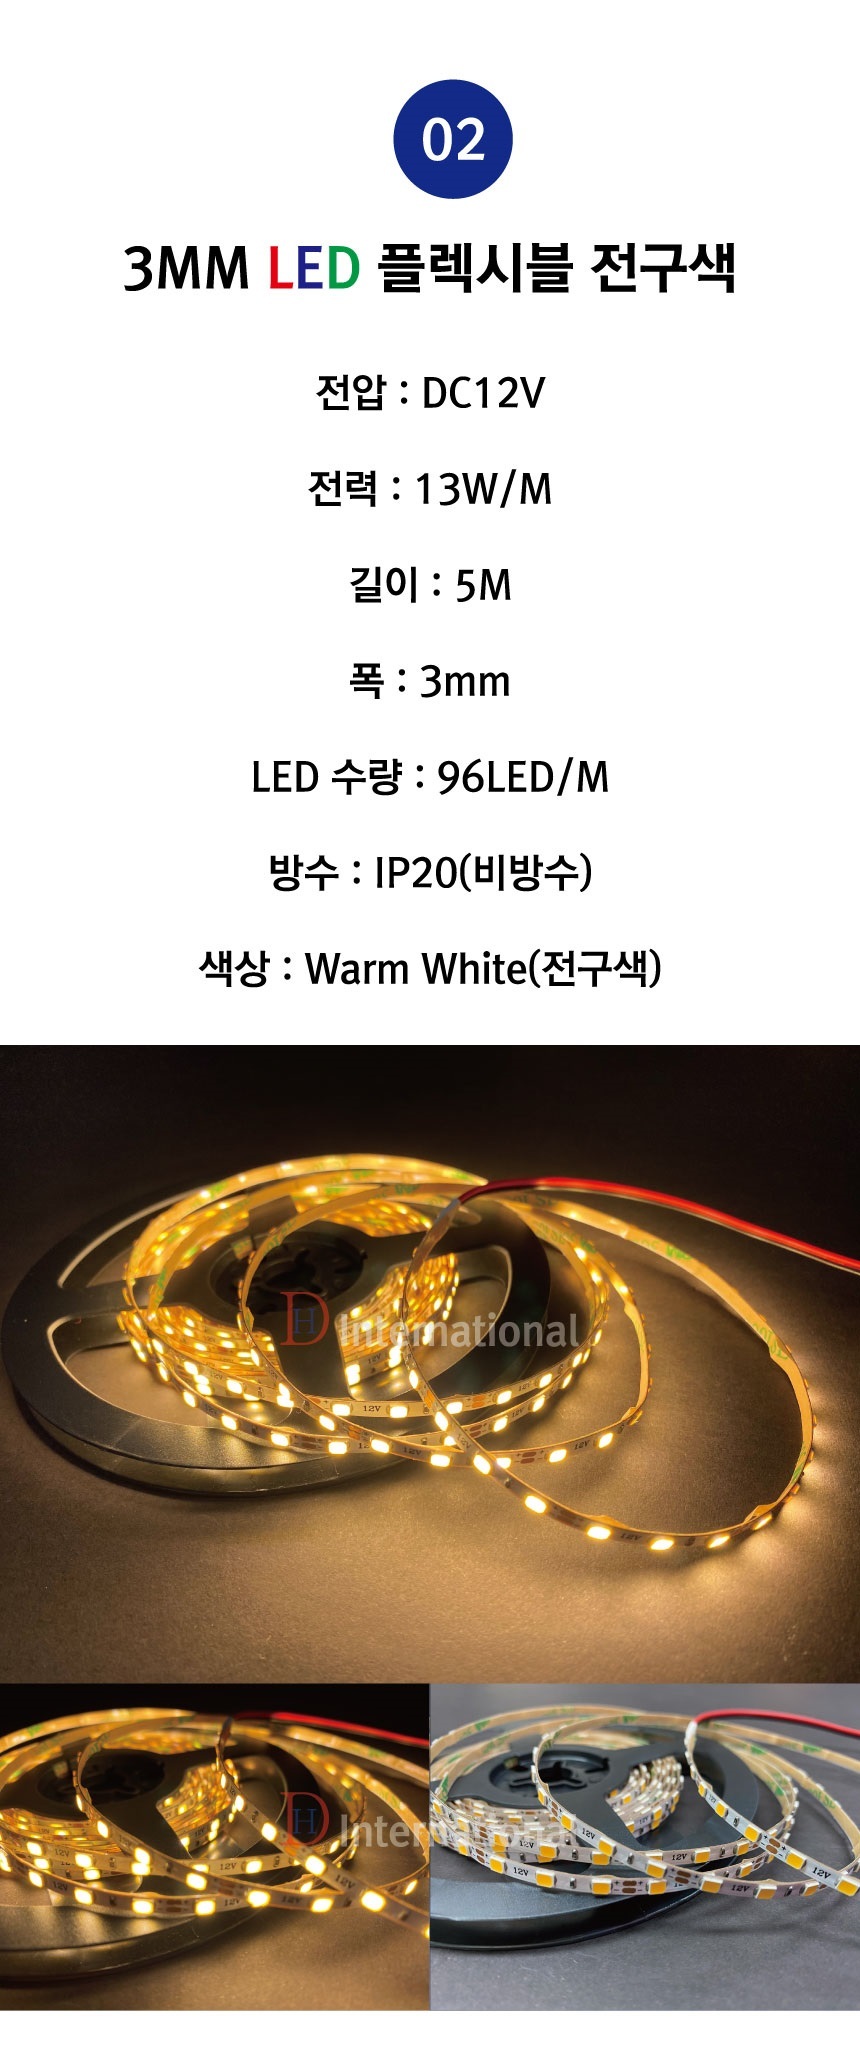 3mm-LED-STRIP-%EC%A0%84%EA%B5%AC%EC%83%8